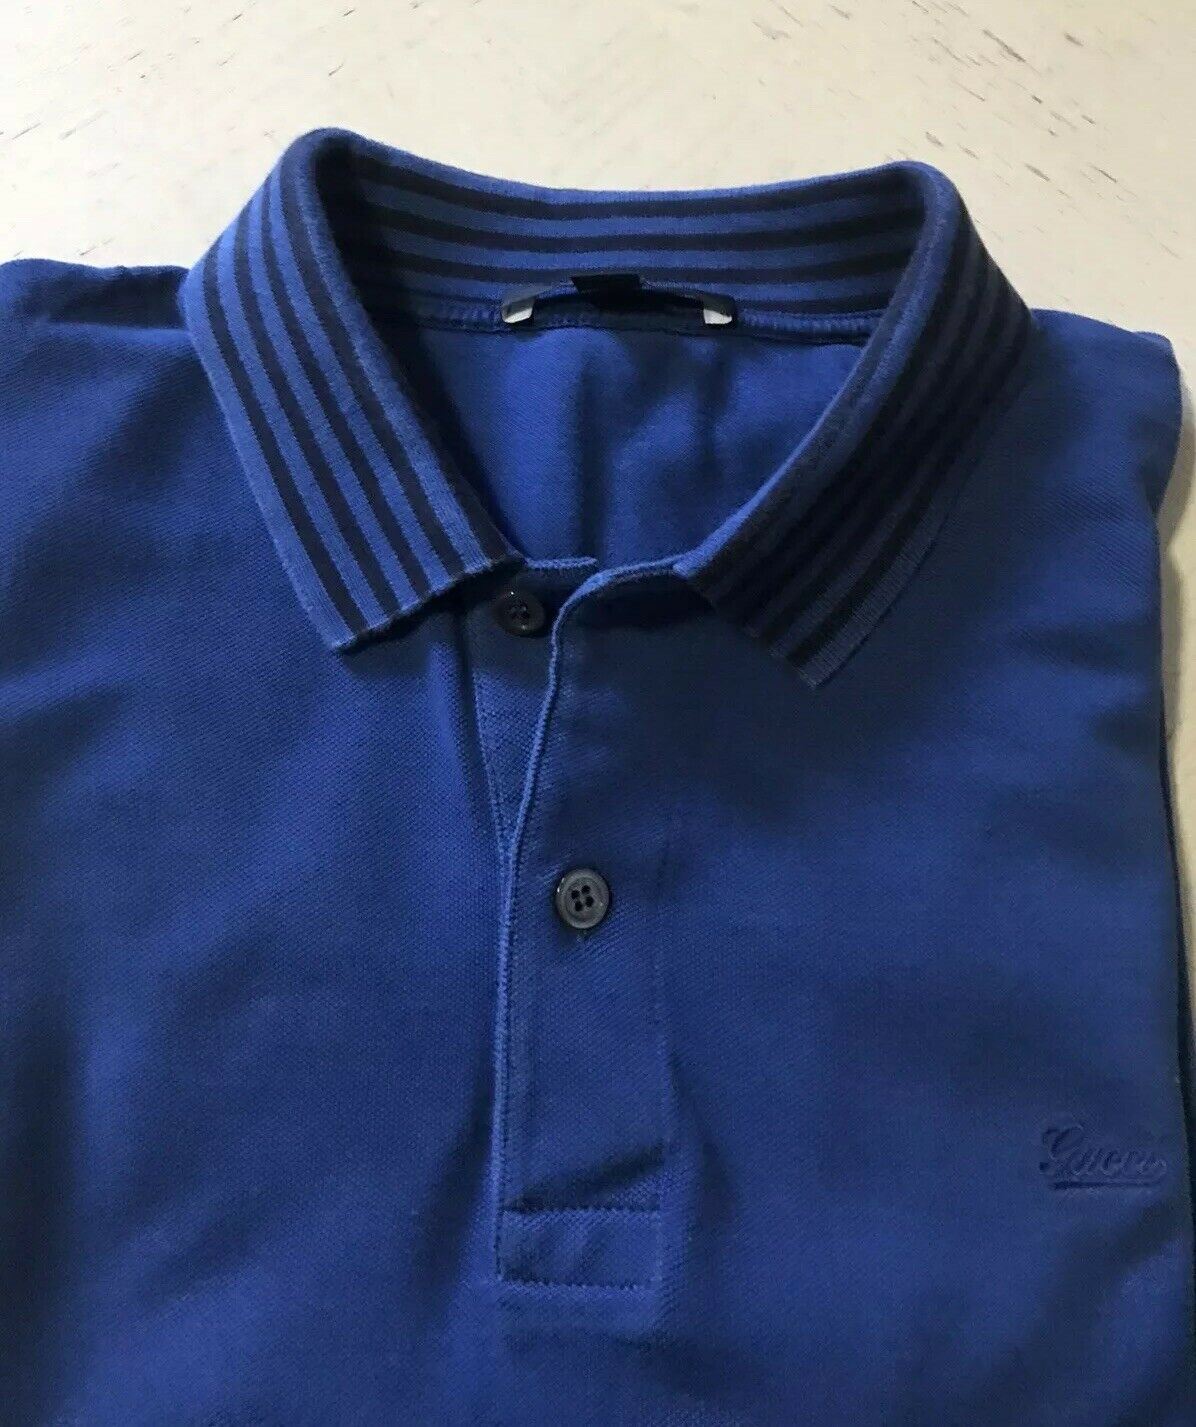 645 $ Gucci Herren-Poloshirt Slim Fit Blau Größe XXXL Italien